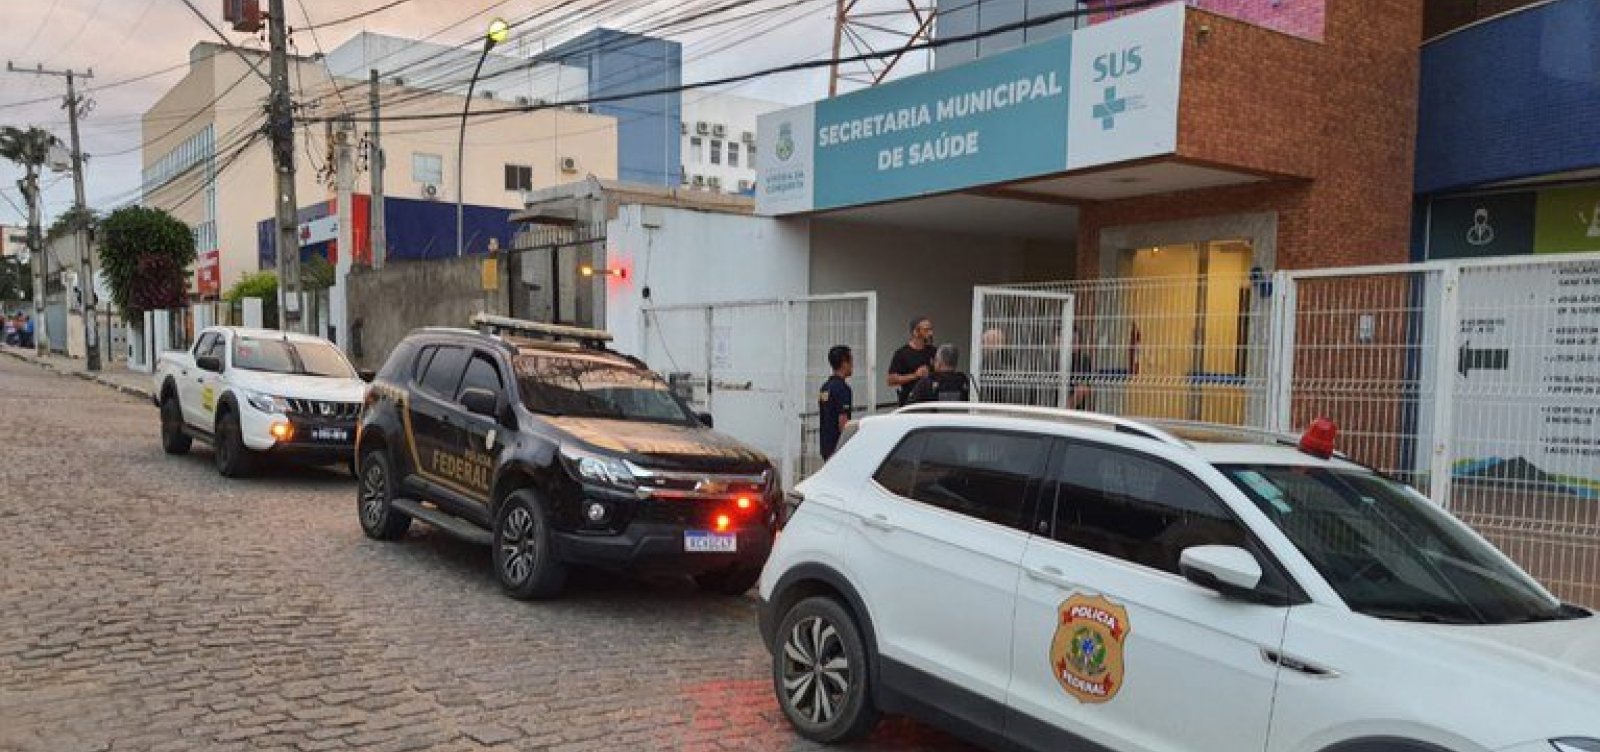 Polícia Federal investiga grupo suspeito de desviar mais de R$ 600 mil da Saúde na Bahia